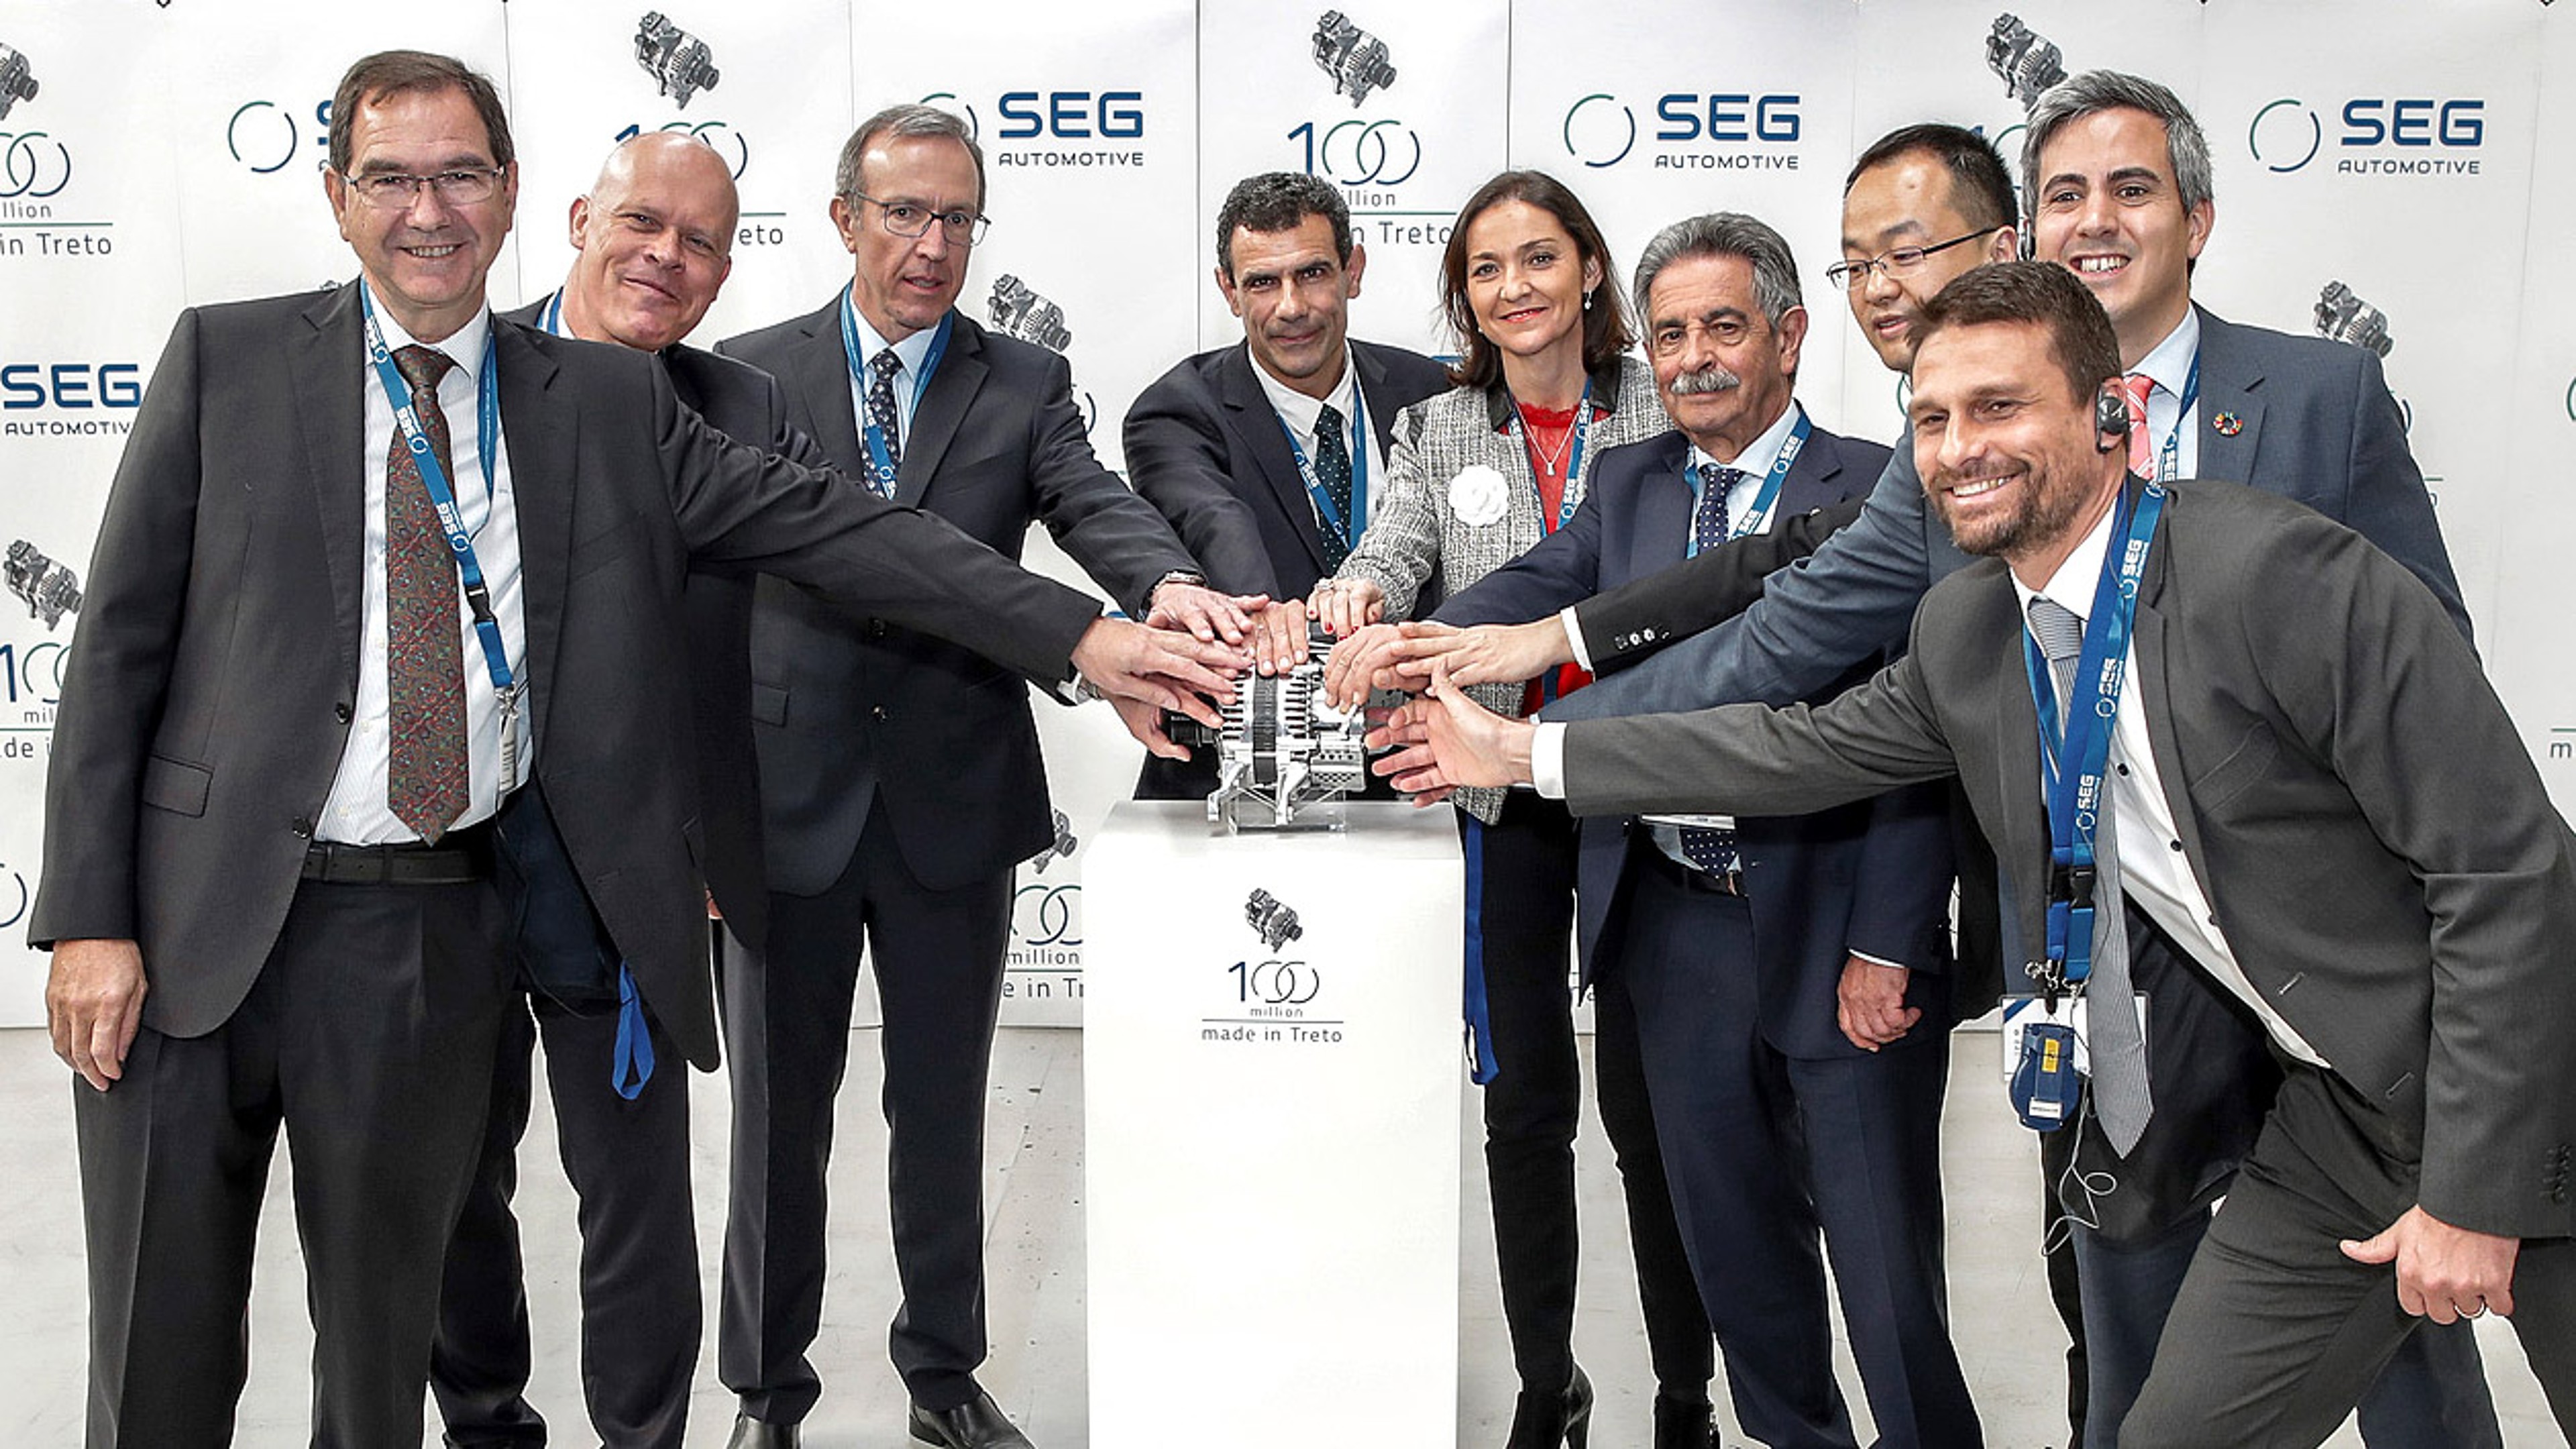 SEG Automotive management celebrates the 100 Millionth generator produced